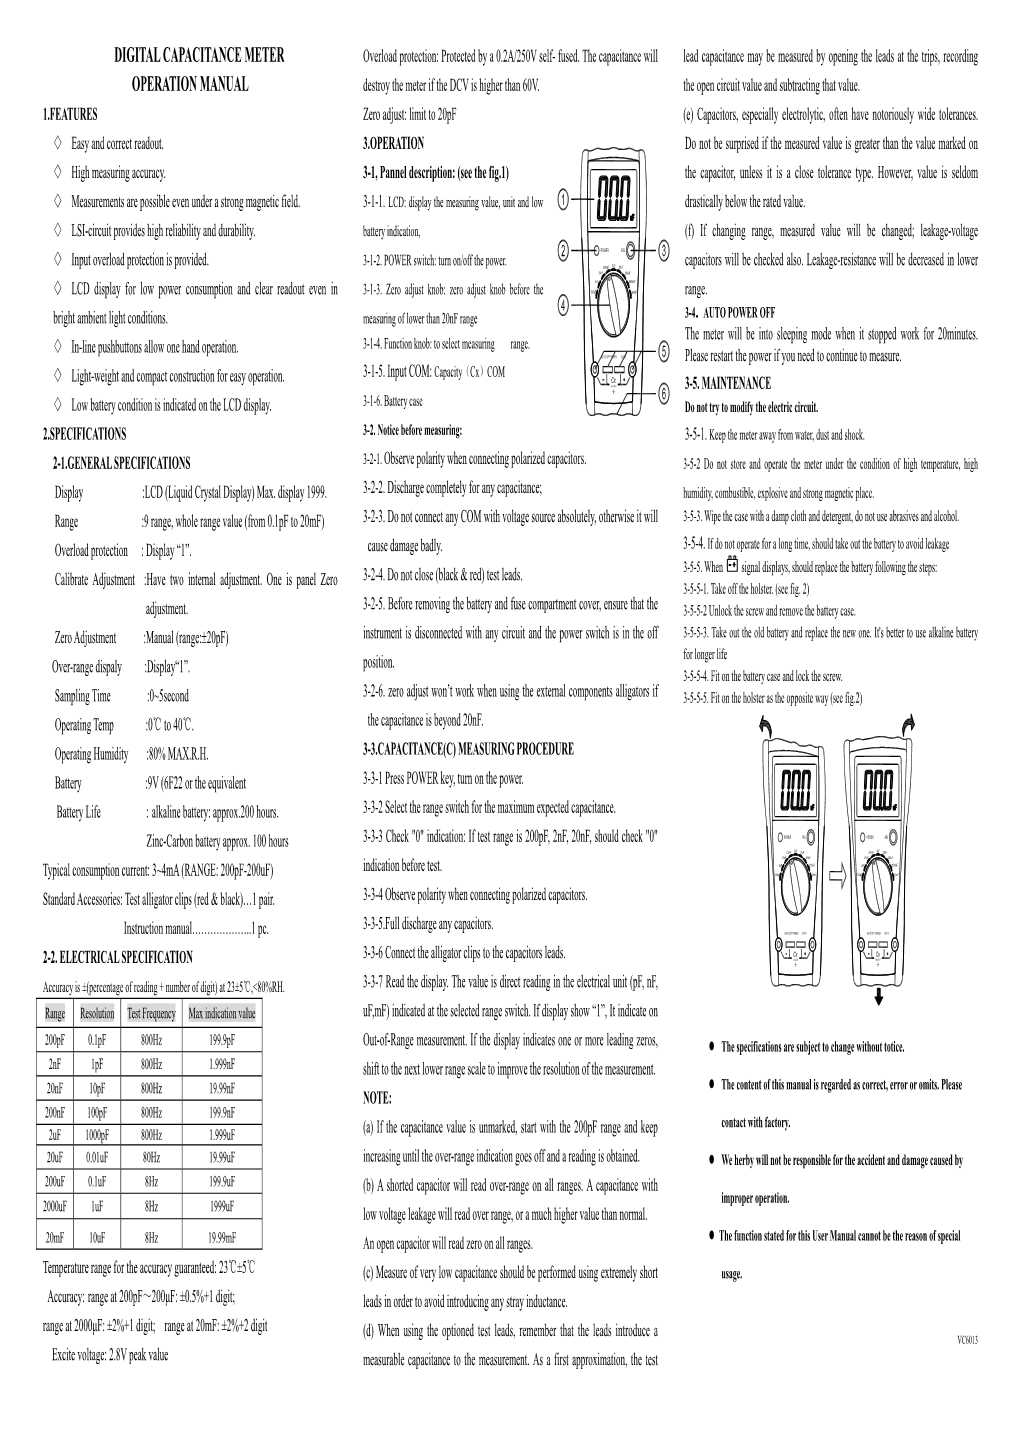 Digital Capacitance Meter Operation Manual